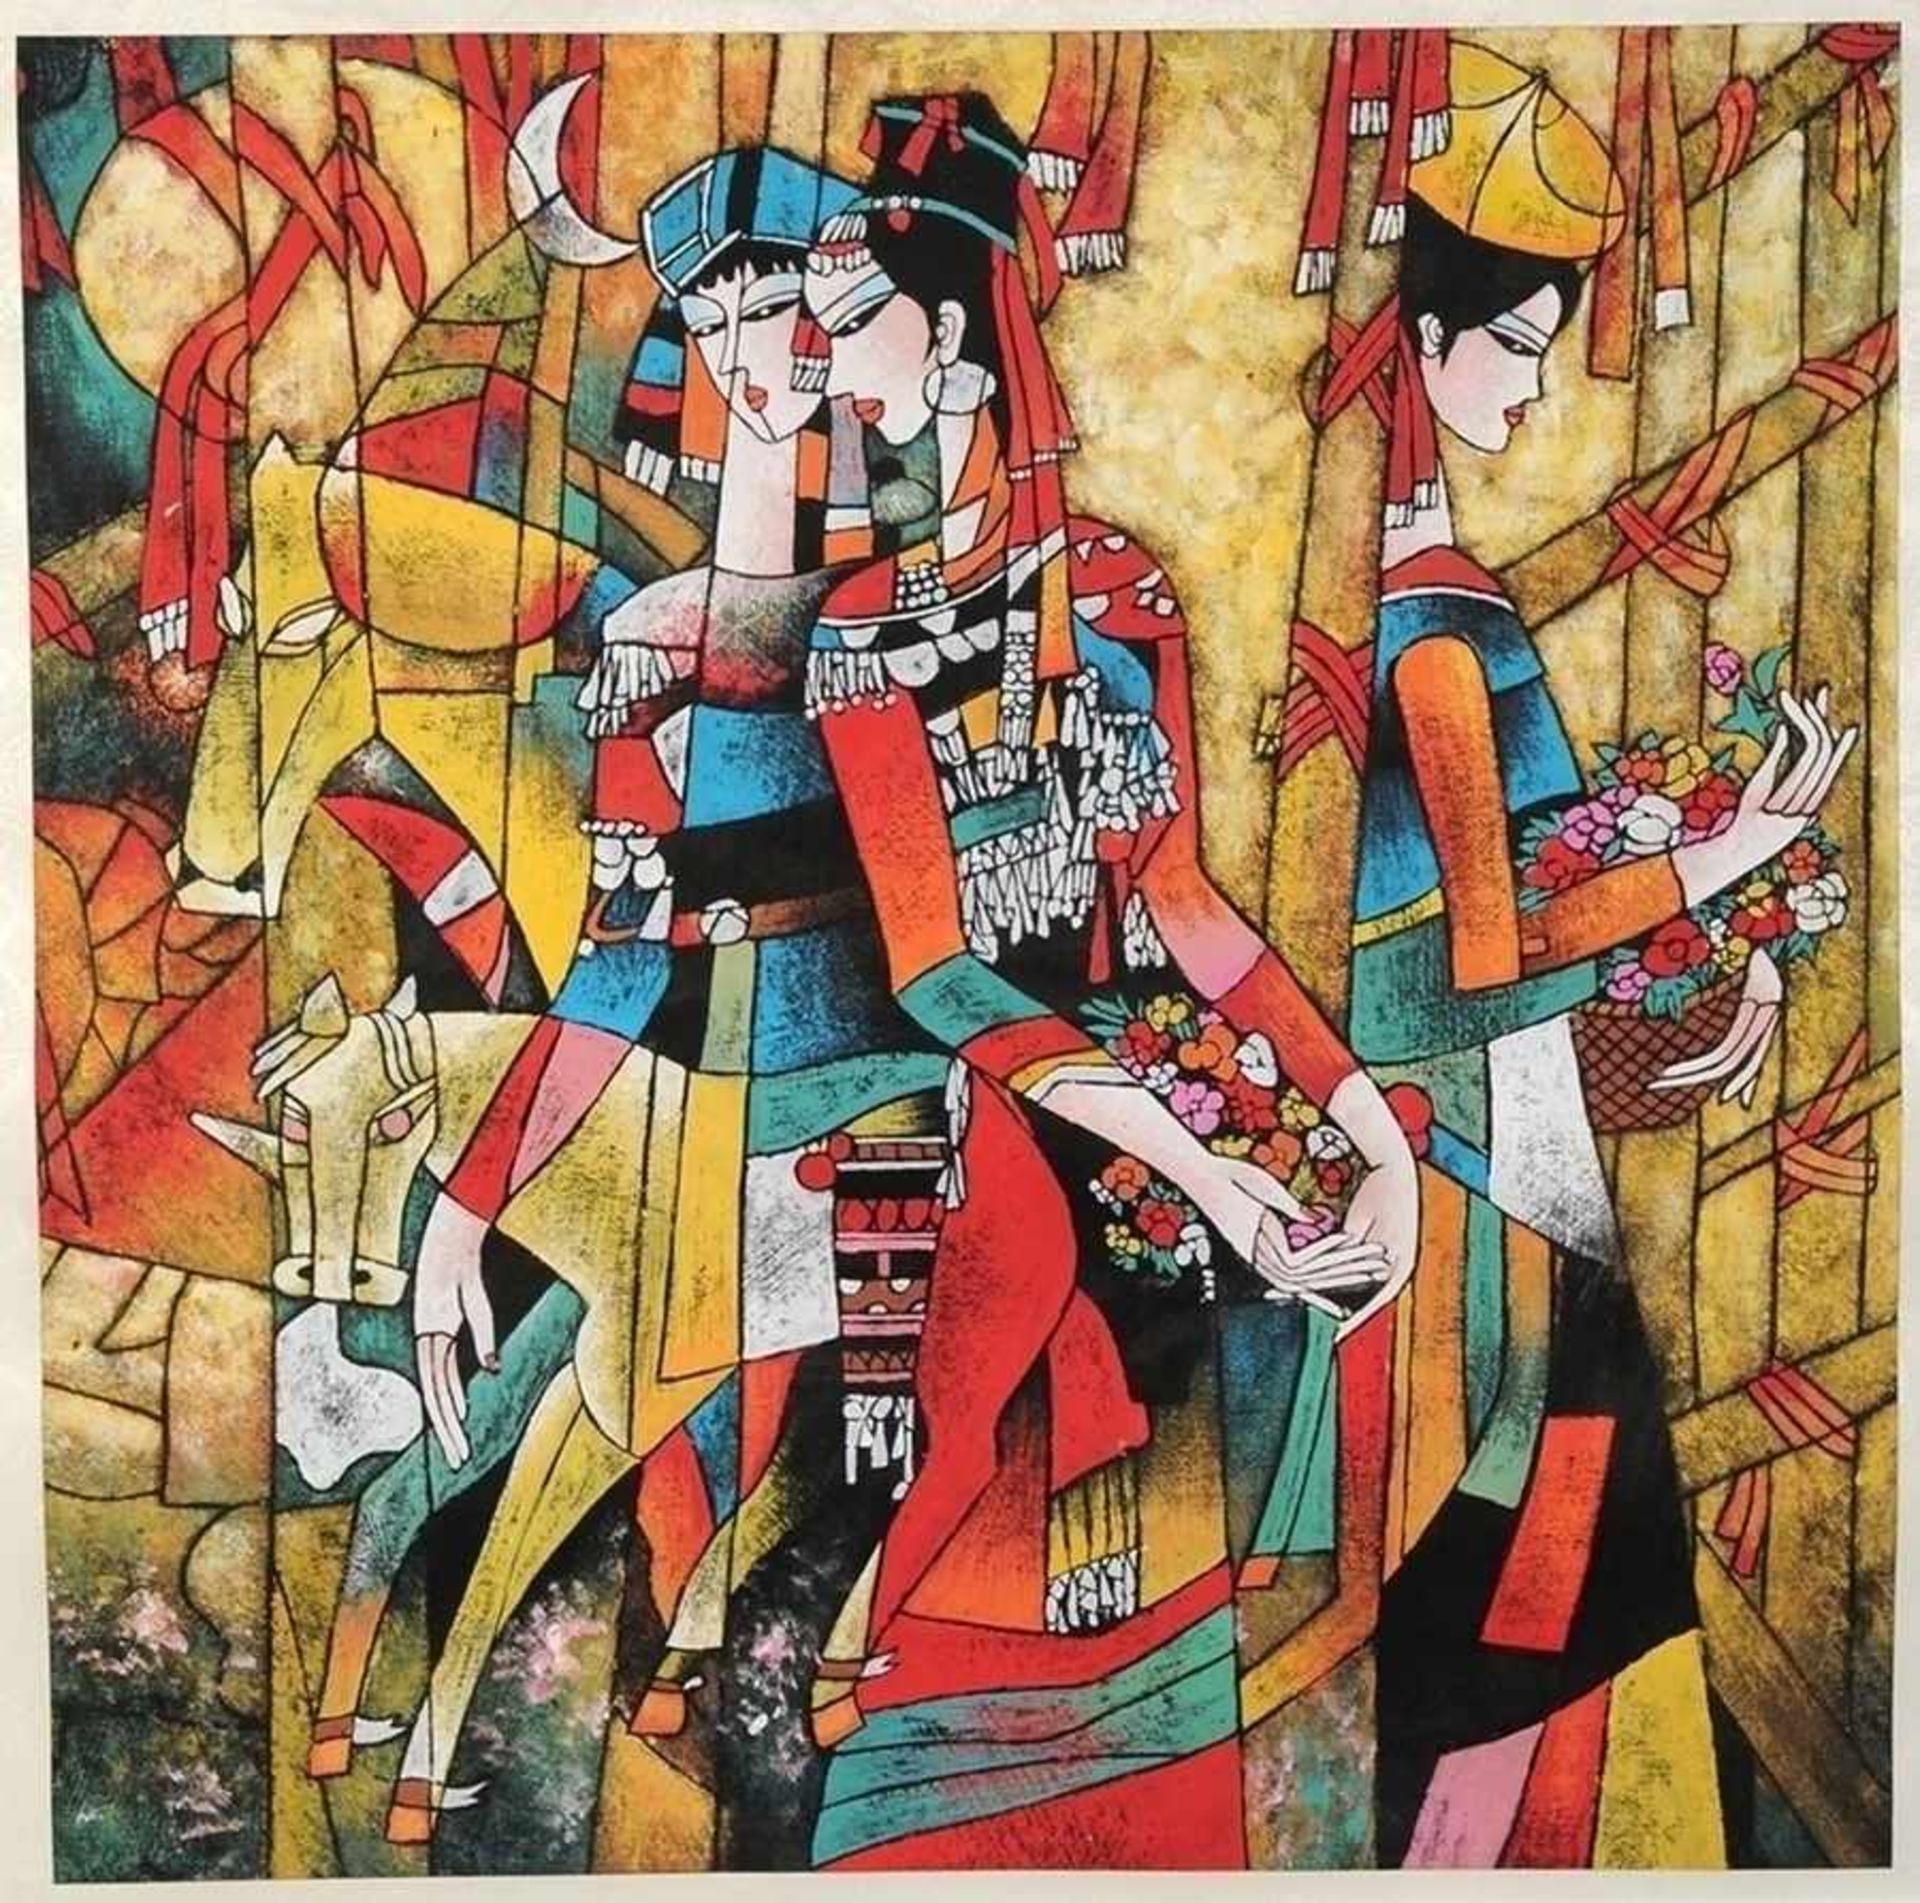 Vier moderne chinesische MalereienGouache/ Mischtechnik. Versch. figürliche Kompositionen. Nicht